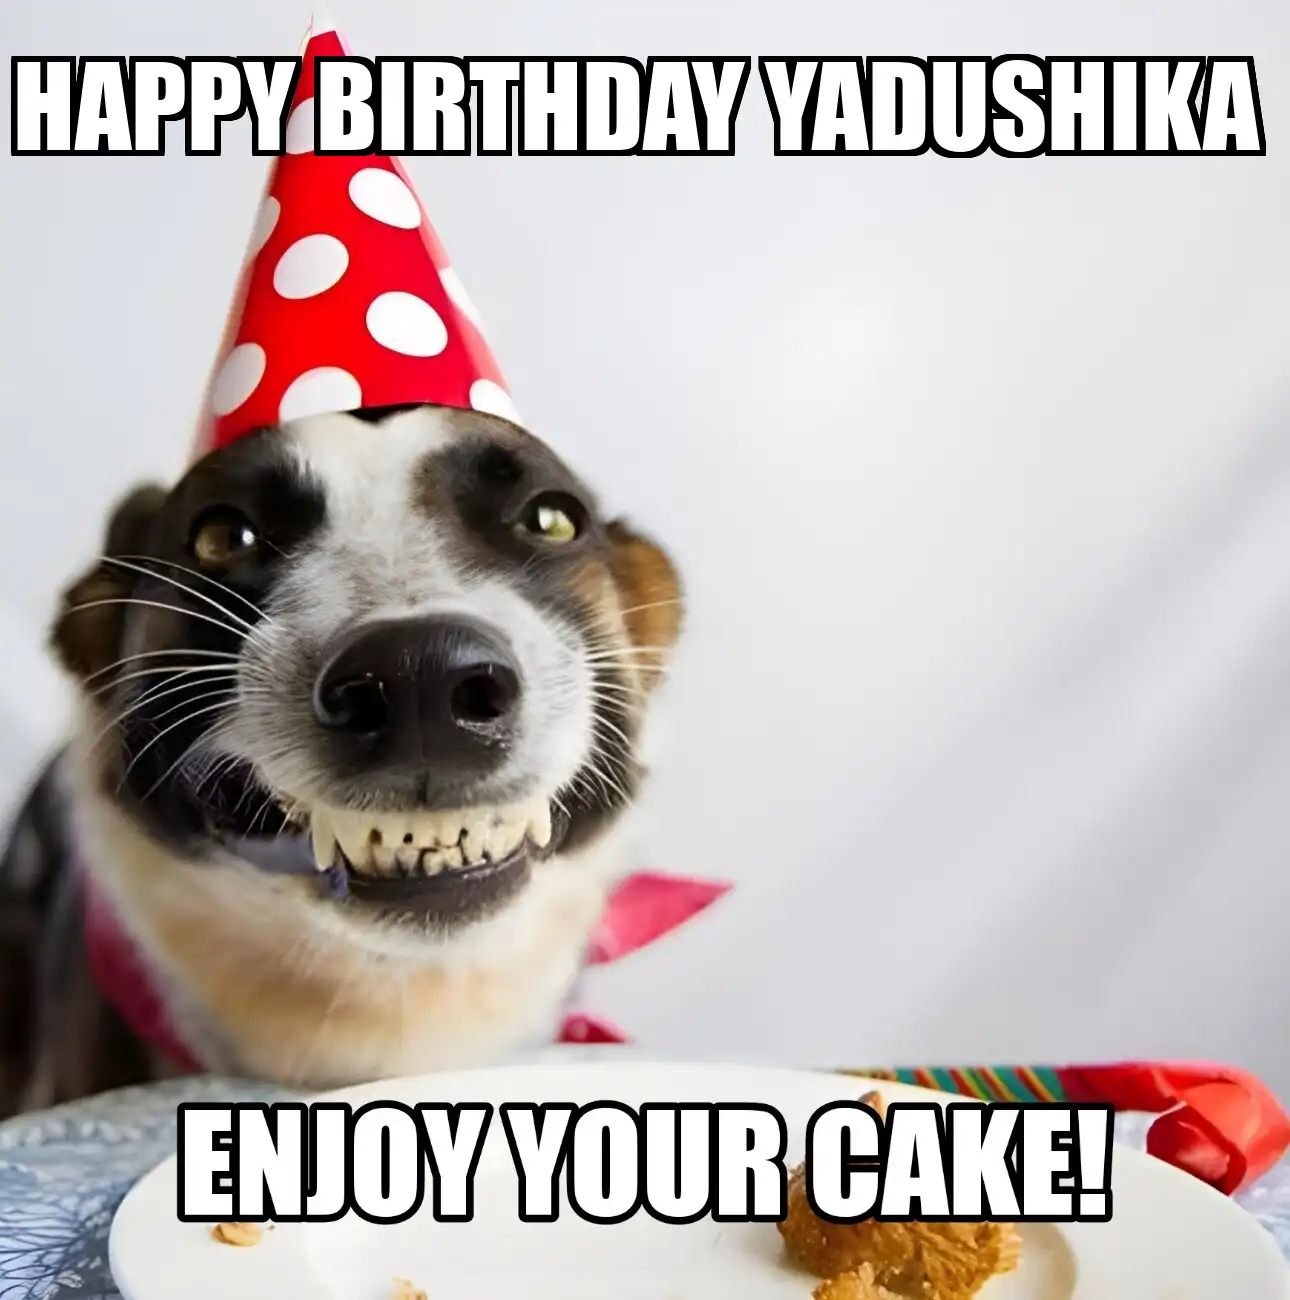 Happy Birthday Yadushika Enjoy Your Cake Dog Meme